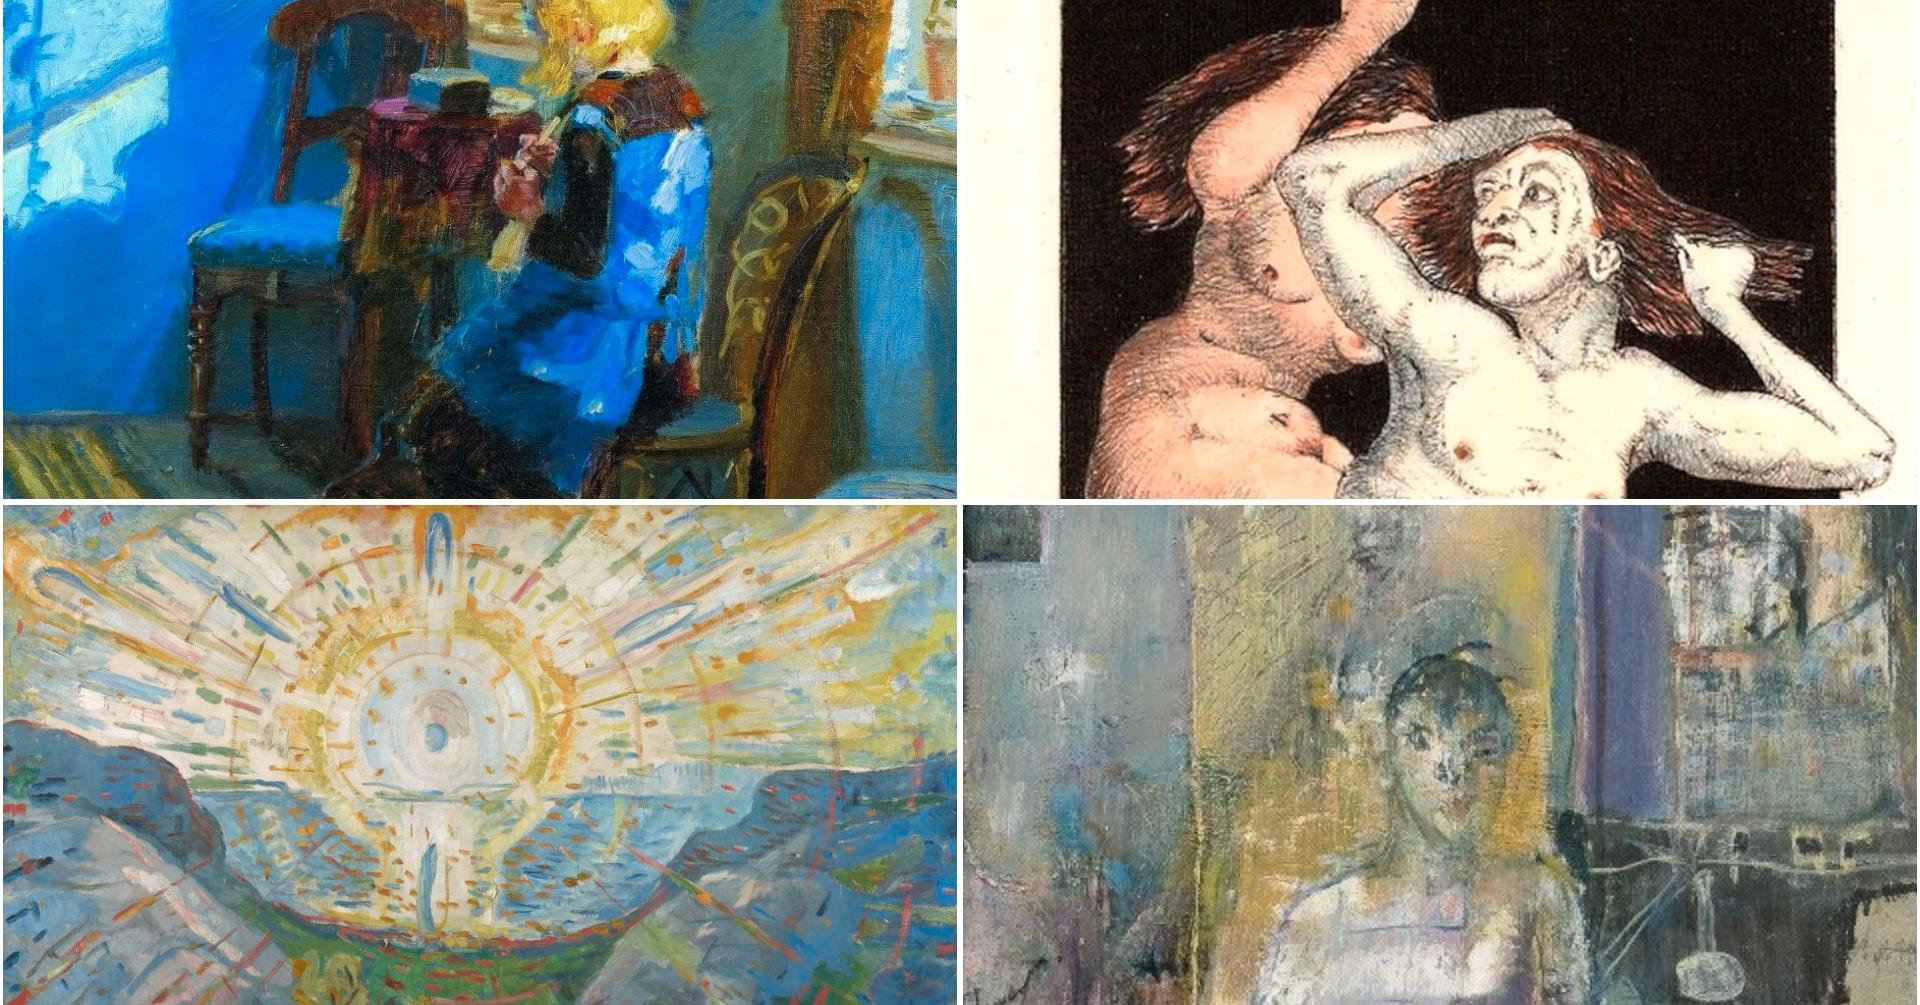 Øverst fra venstre: Anna Anchers «Solskin i den blå stue» og Arne Bendik Sjur (motiv fra Goya-serien). Nederst: Edvard Munchs «Solen» og et motiv av Svein Strand.